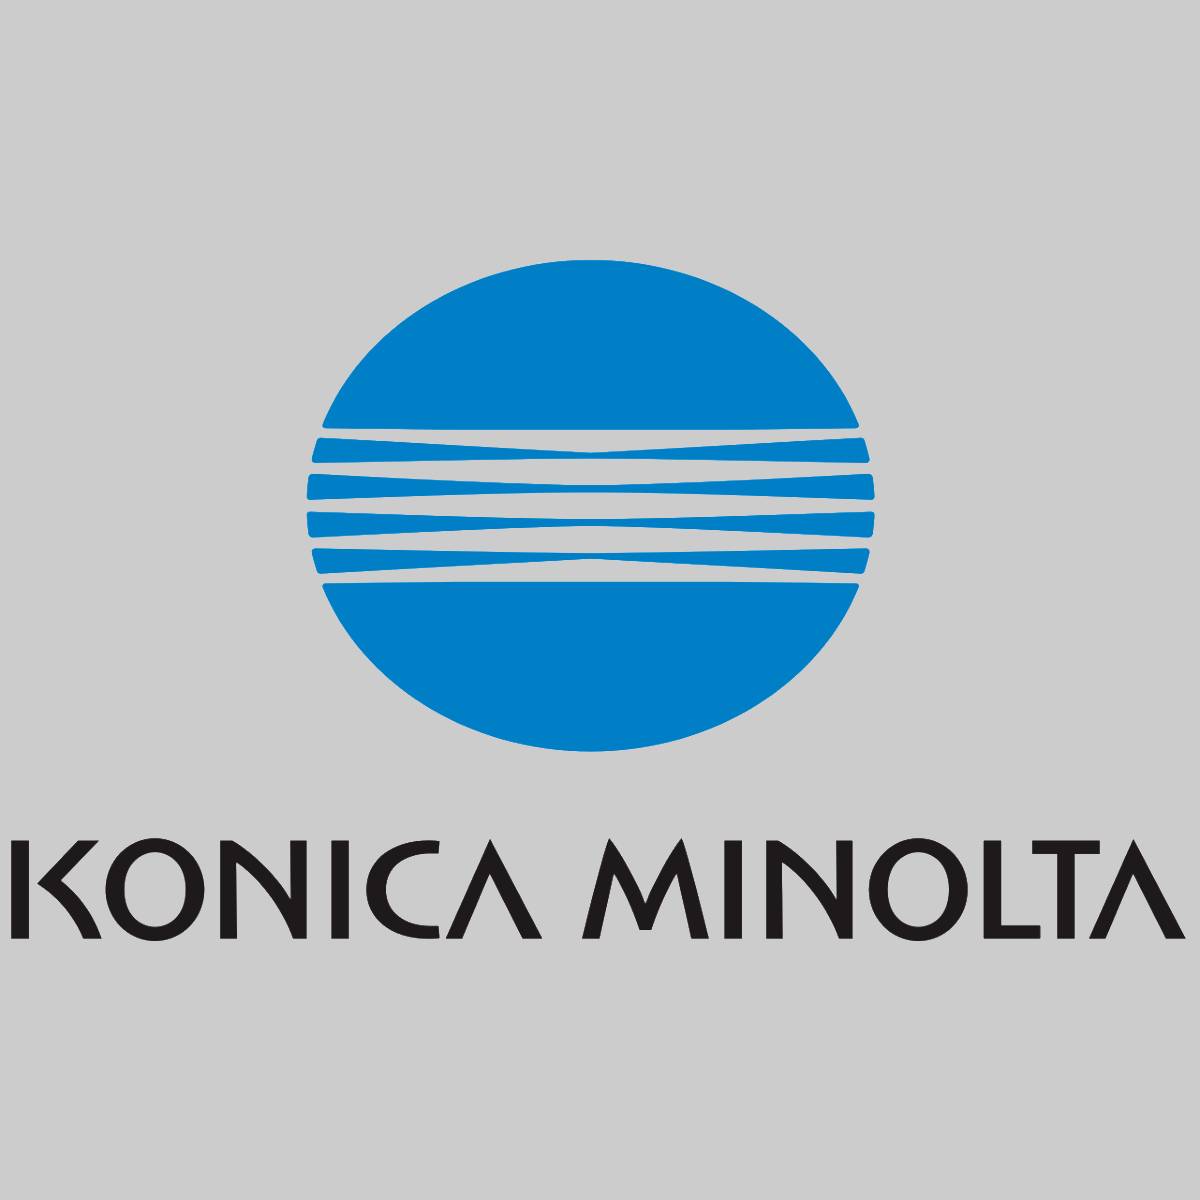 "Original Konica Minolta Toner Magenta A0DK352 for 4600 Series NEW OVP